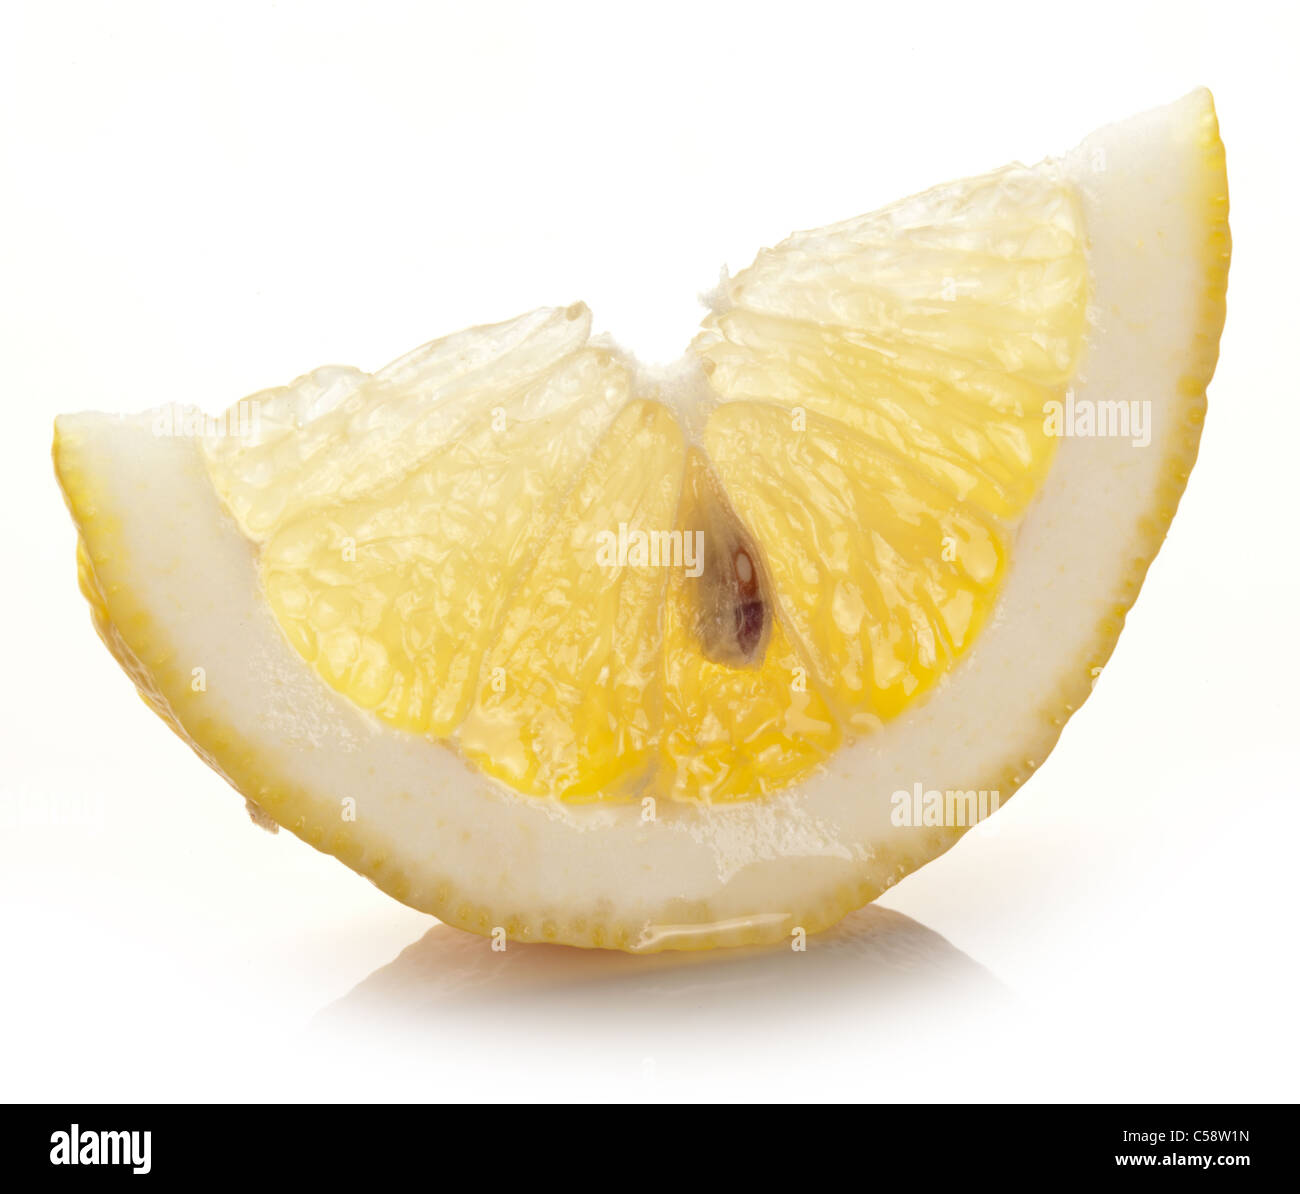 Zitronenscheibe auf weißem Hintergrund. Stockfoto